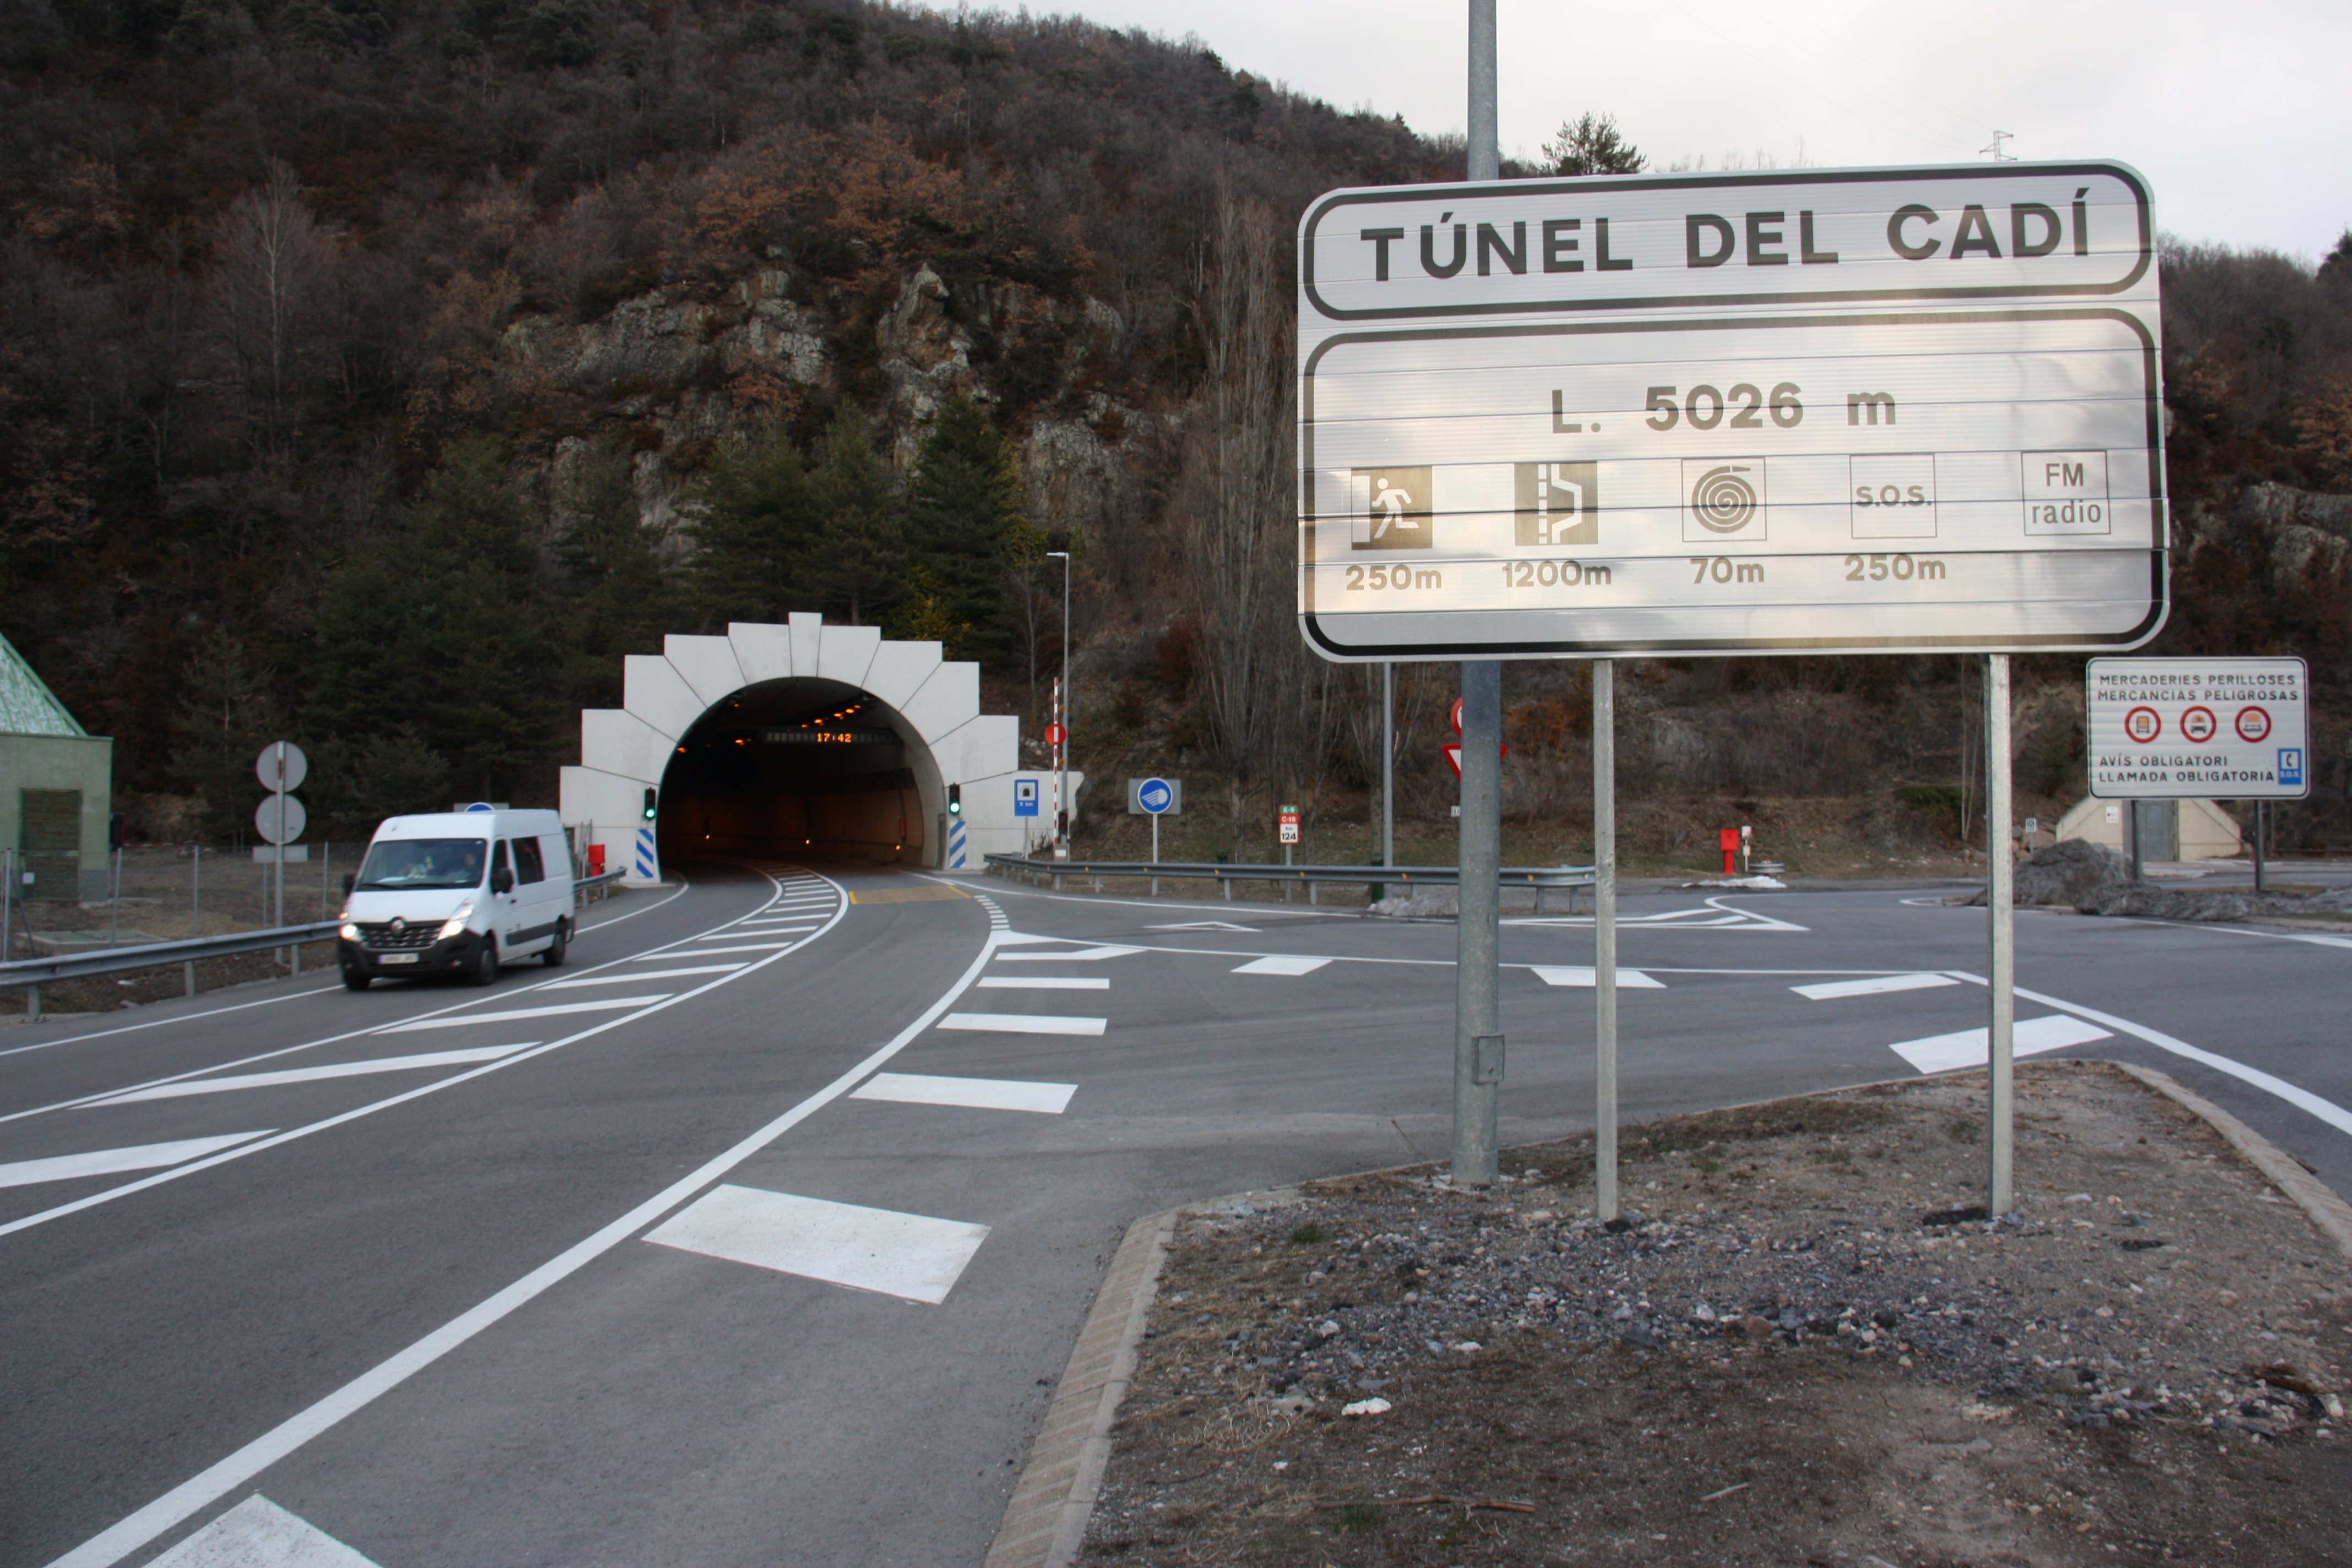 Oferta millonaria de Abertis por los túneles de Barcelona y Cadí